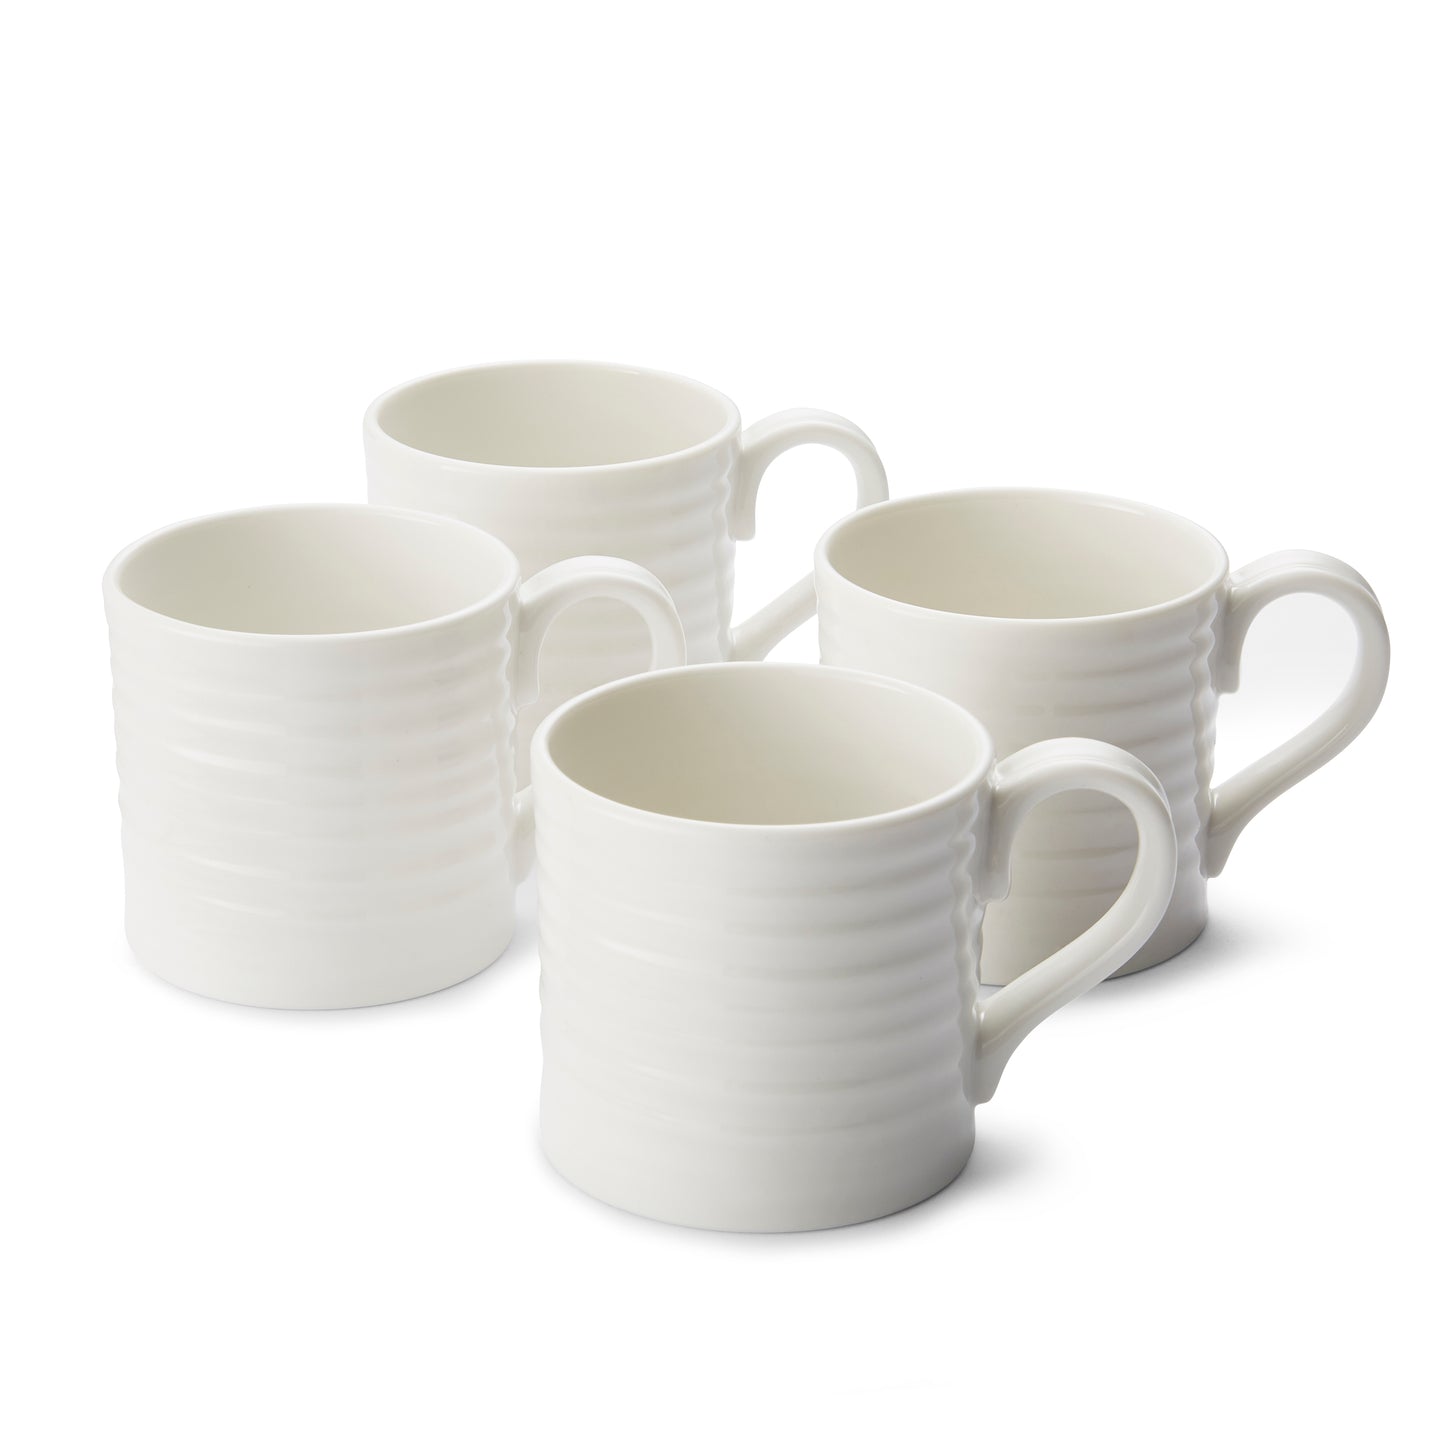 Sophie Conran For Portmeirion Short Mug - Set of 4